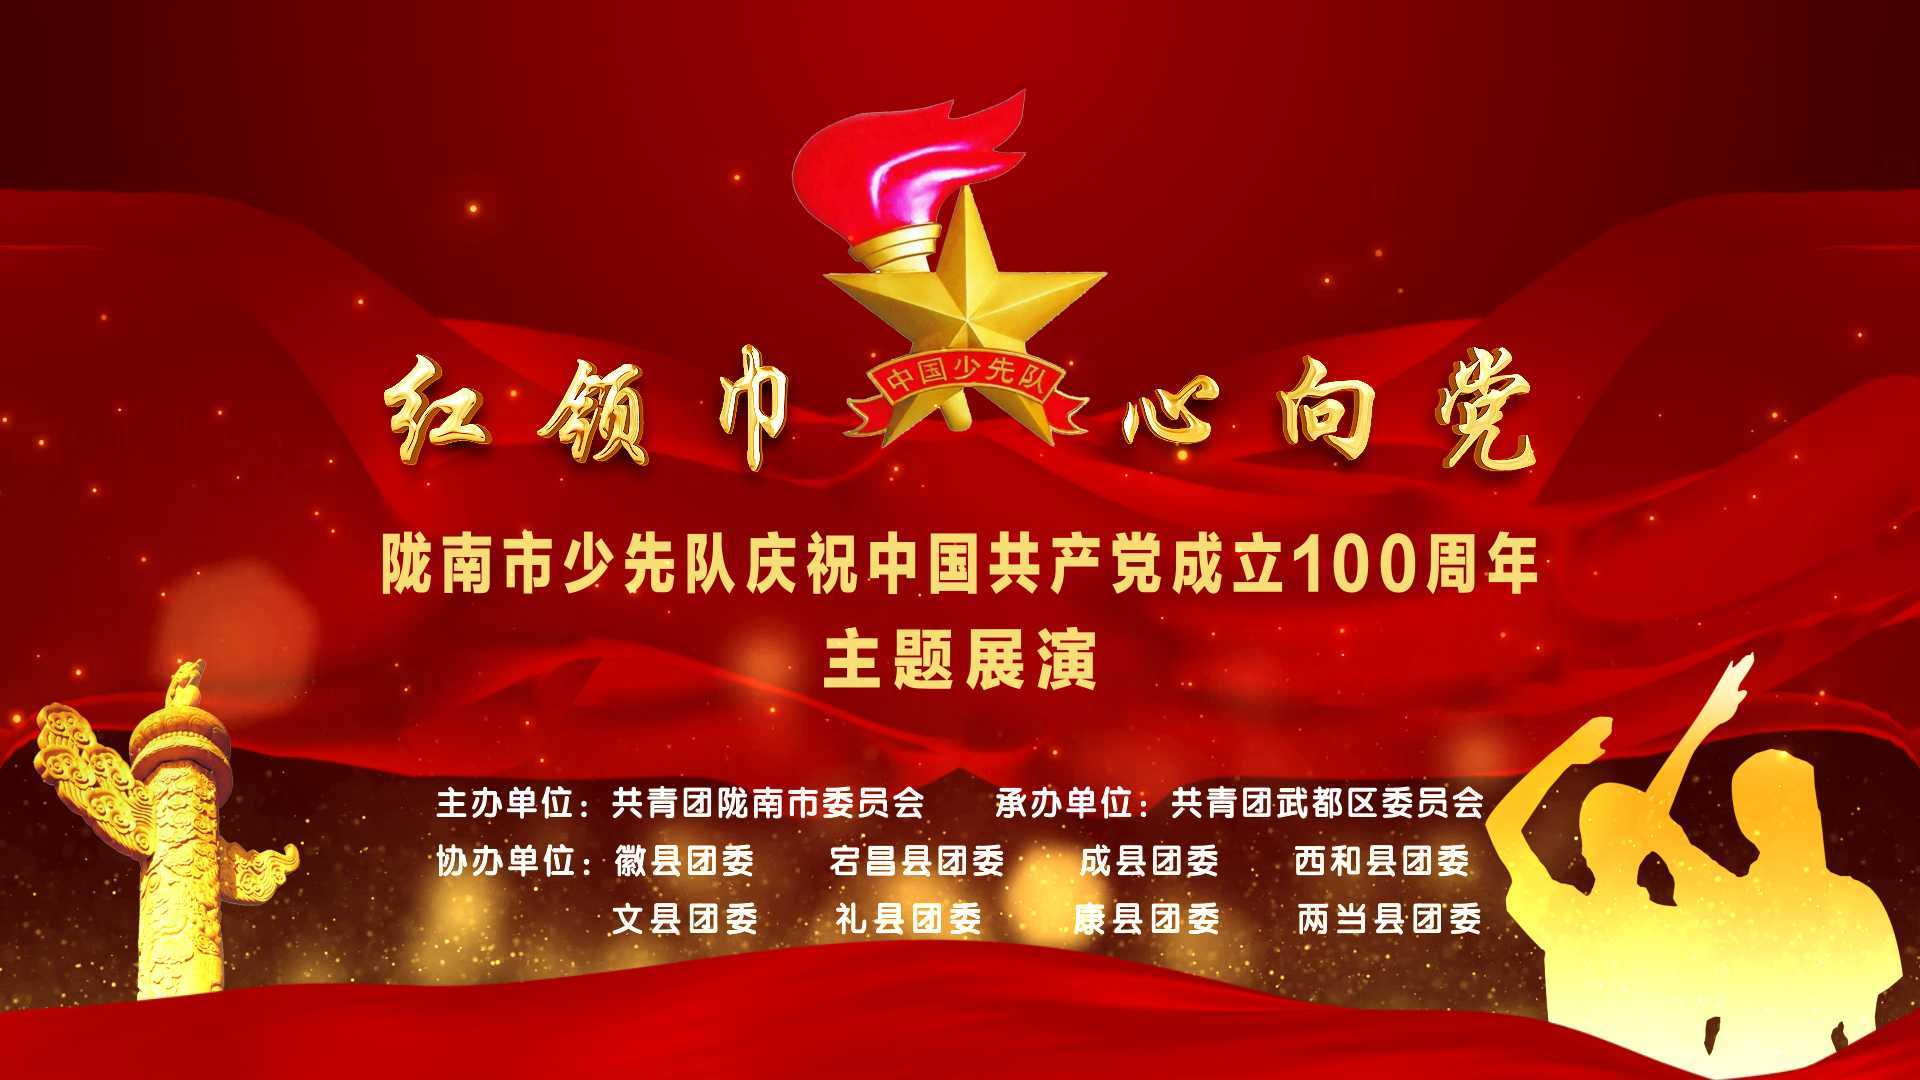 陇南市少年队庆祝建党100周年主题展演